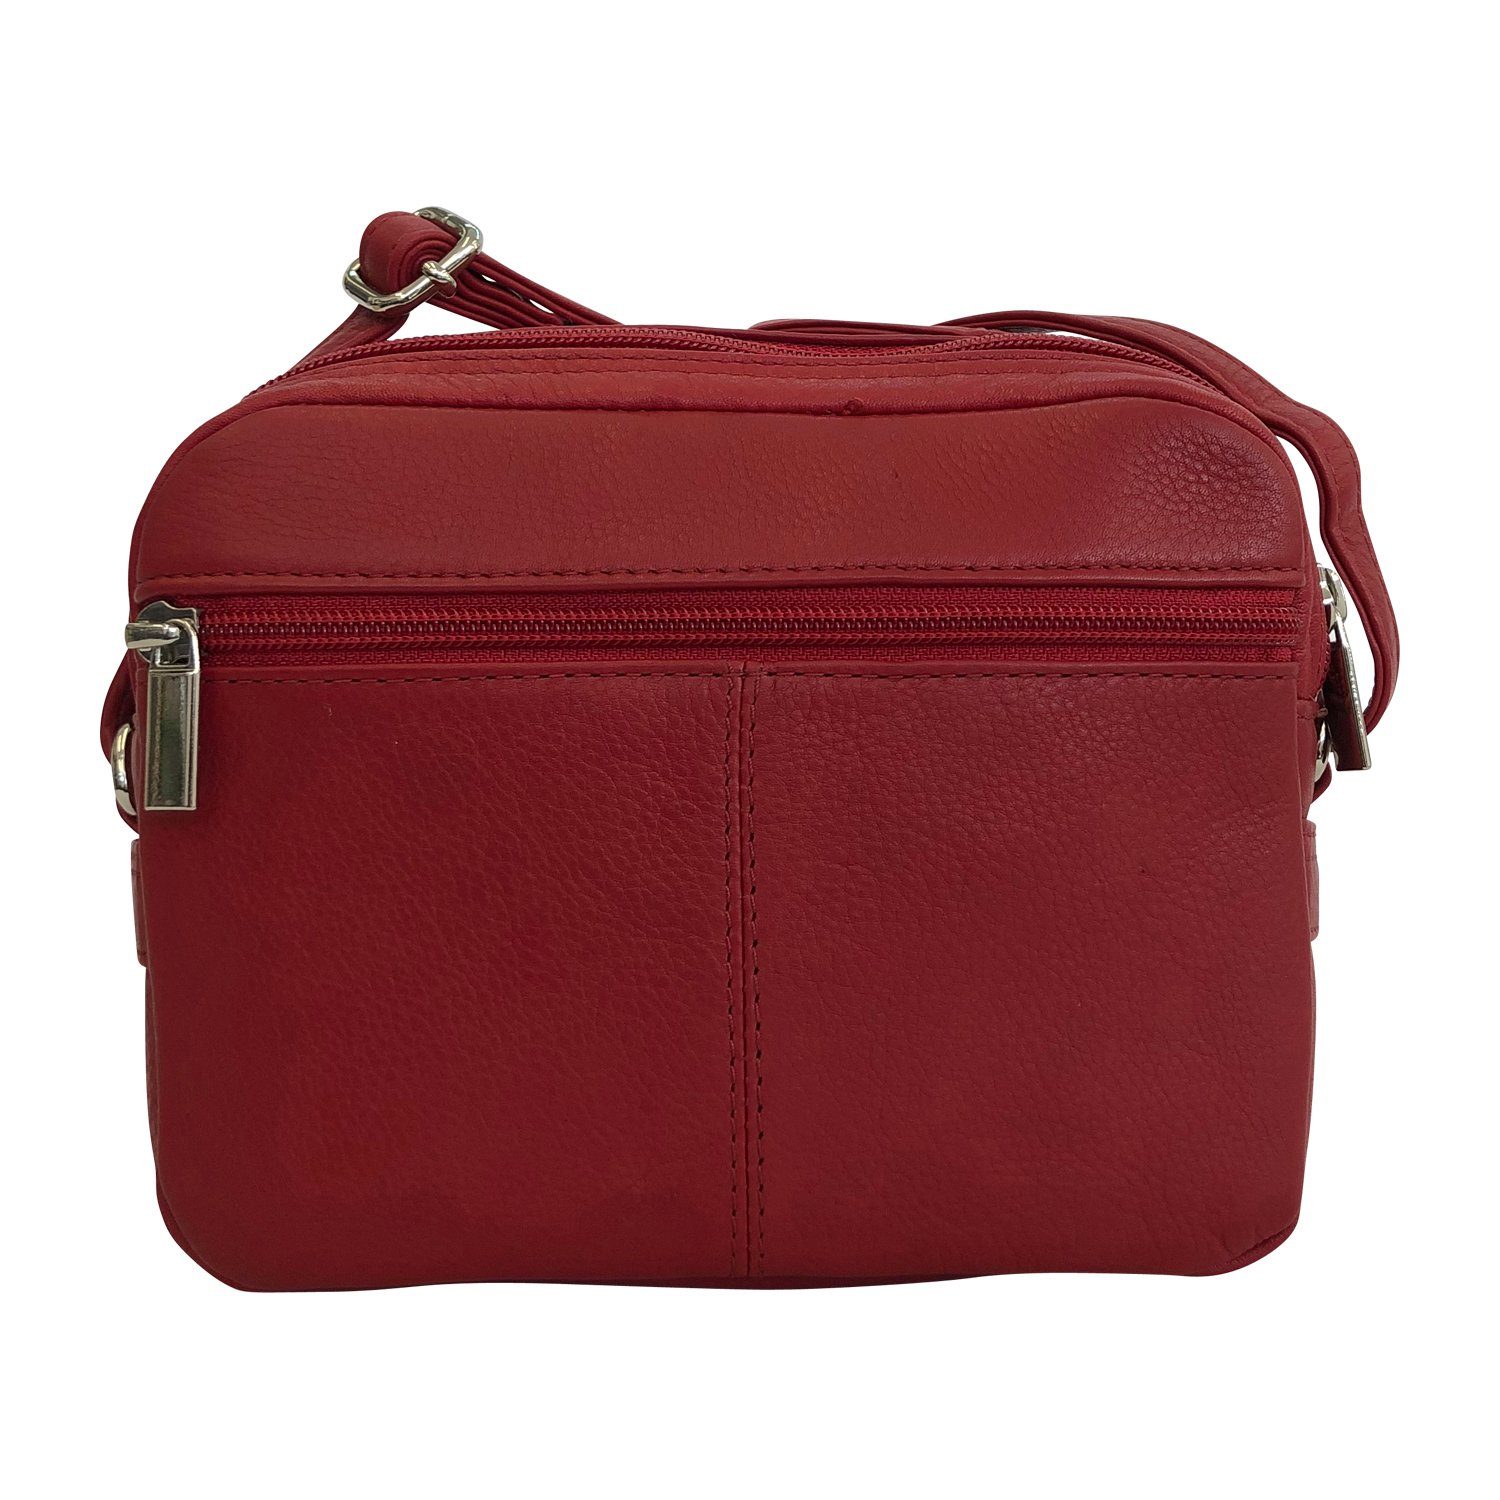 Cinino Handtasche Lisa, Ledertasche Umhängetasche Rot